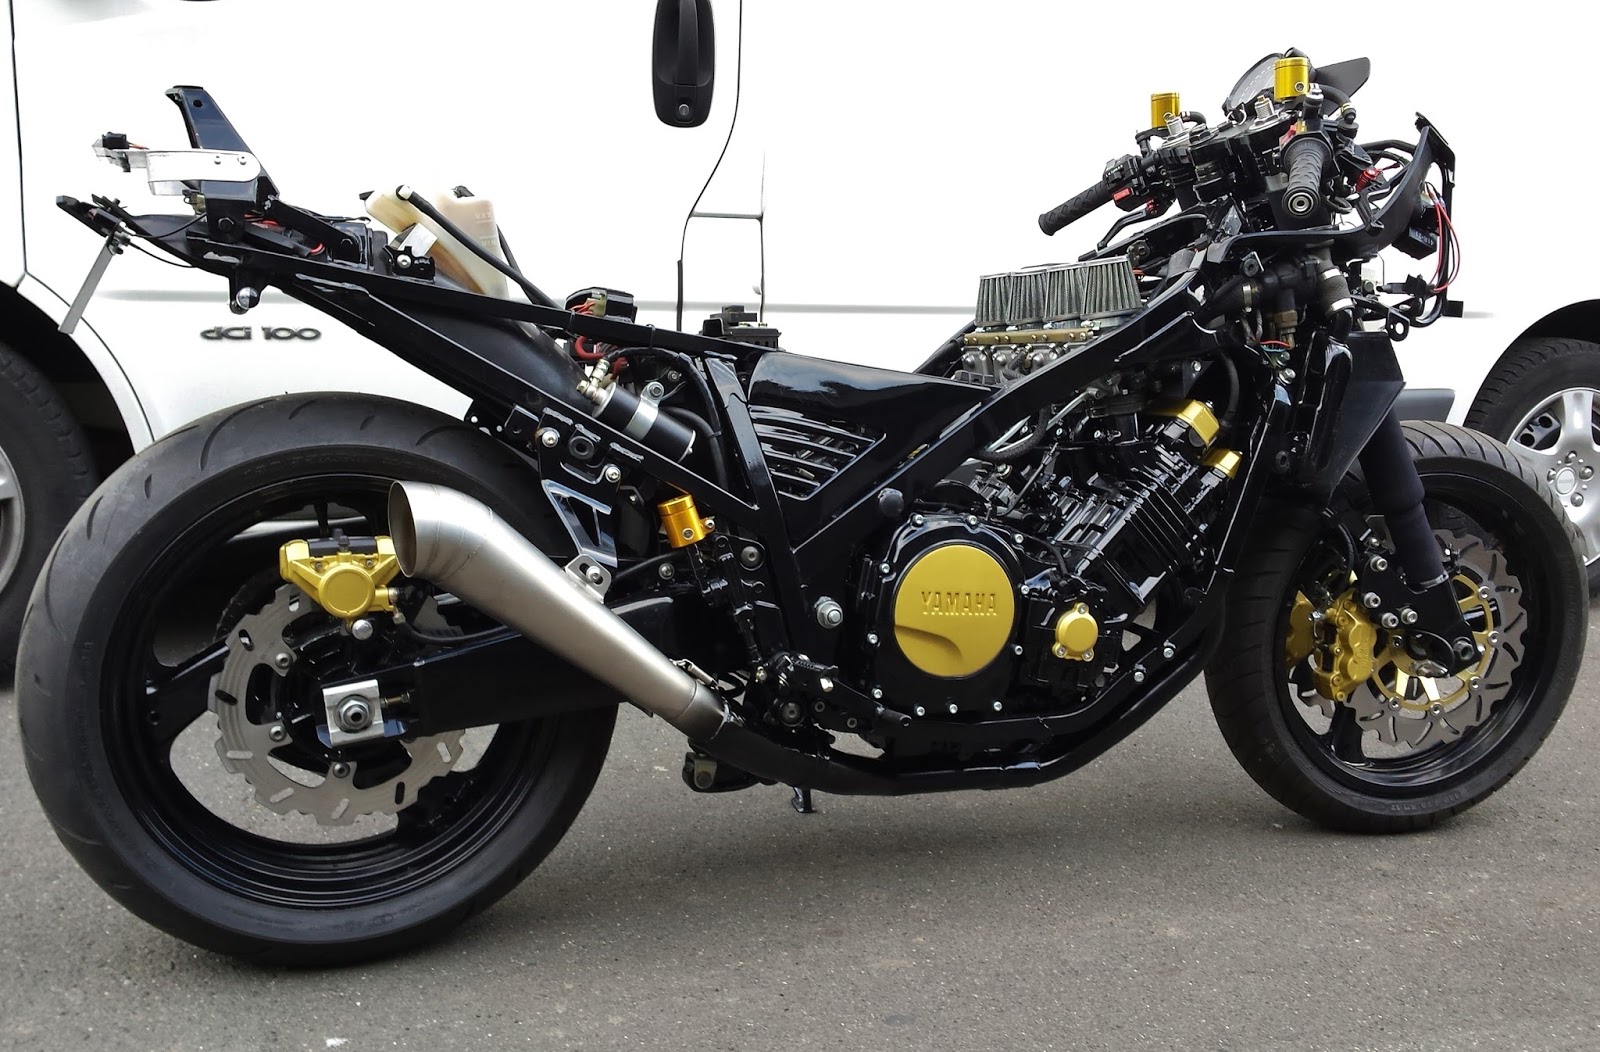 Ямаха fzr 750 genesis - спортивный мотоцикл с печальной судьбой